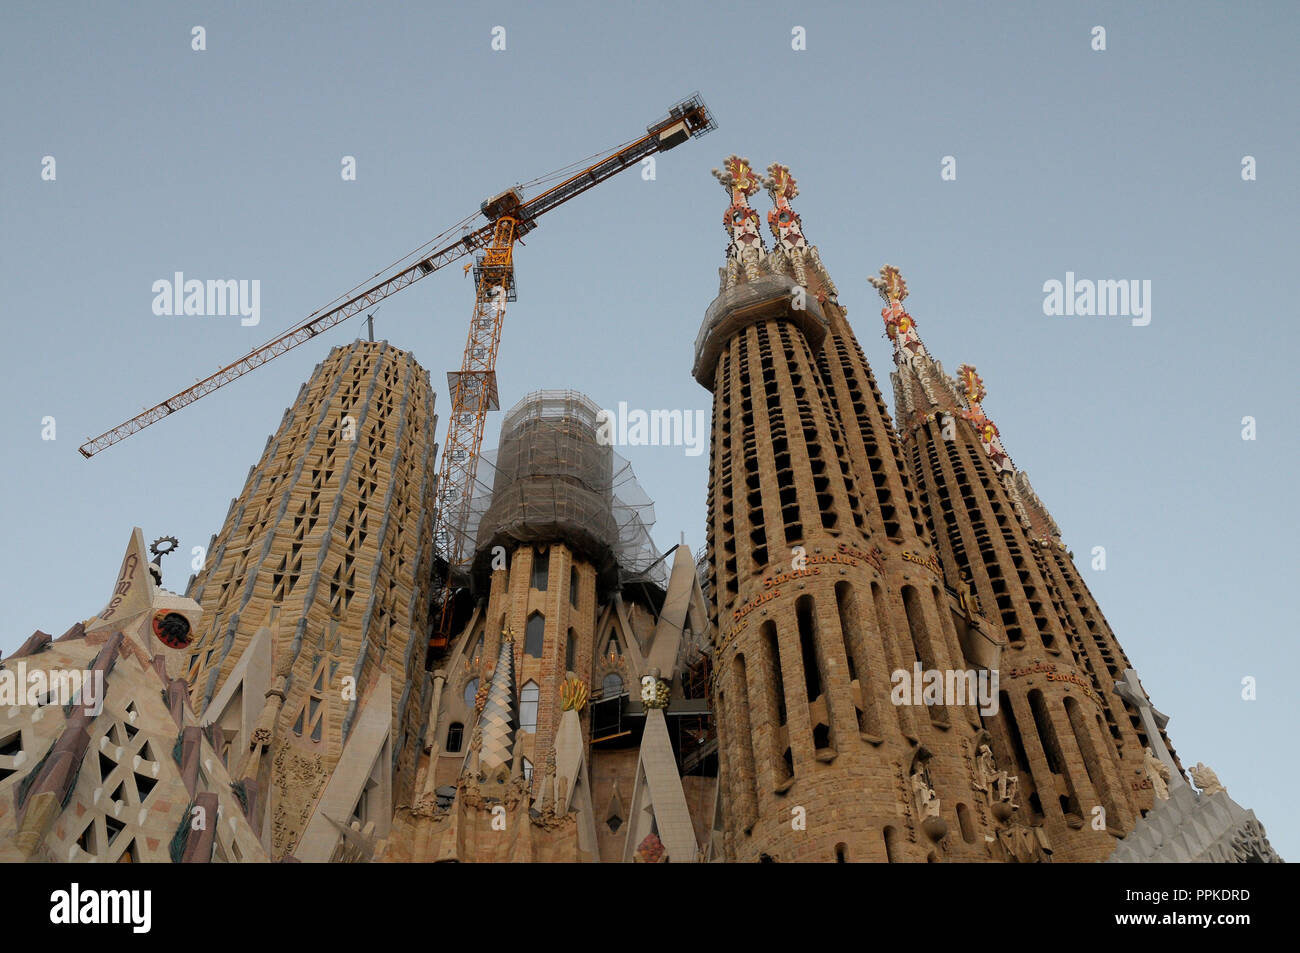 Sagrada Familia entworfen von dem Architekten Antoni Gaudi Gebäude moderne façane auf Bau, Barcelona, Spanien Stockfoto